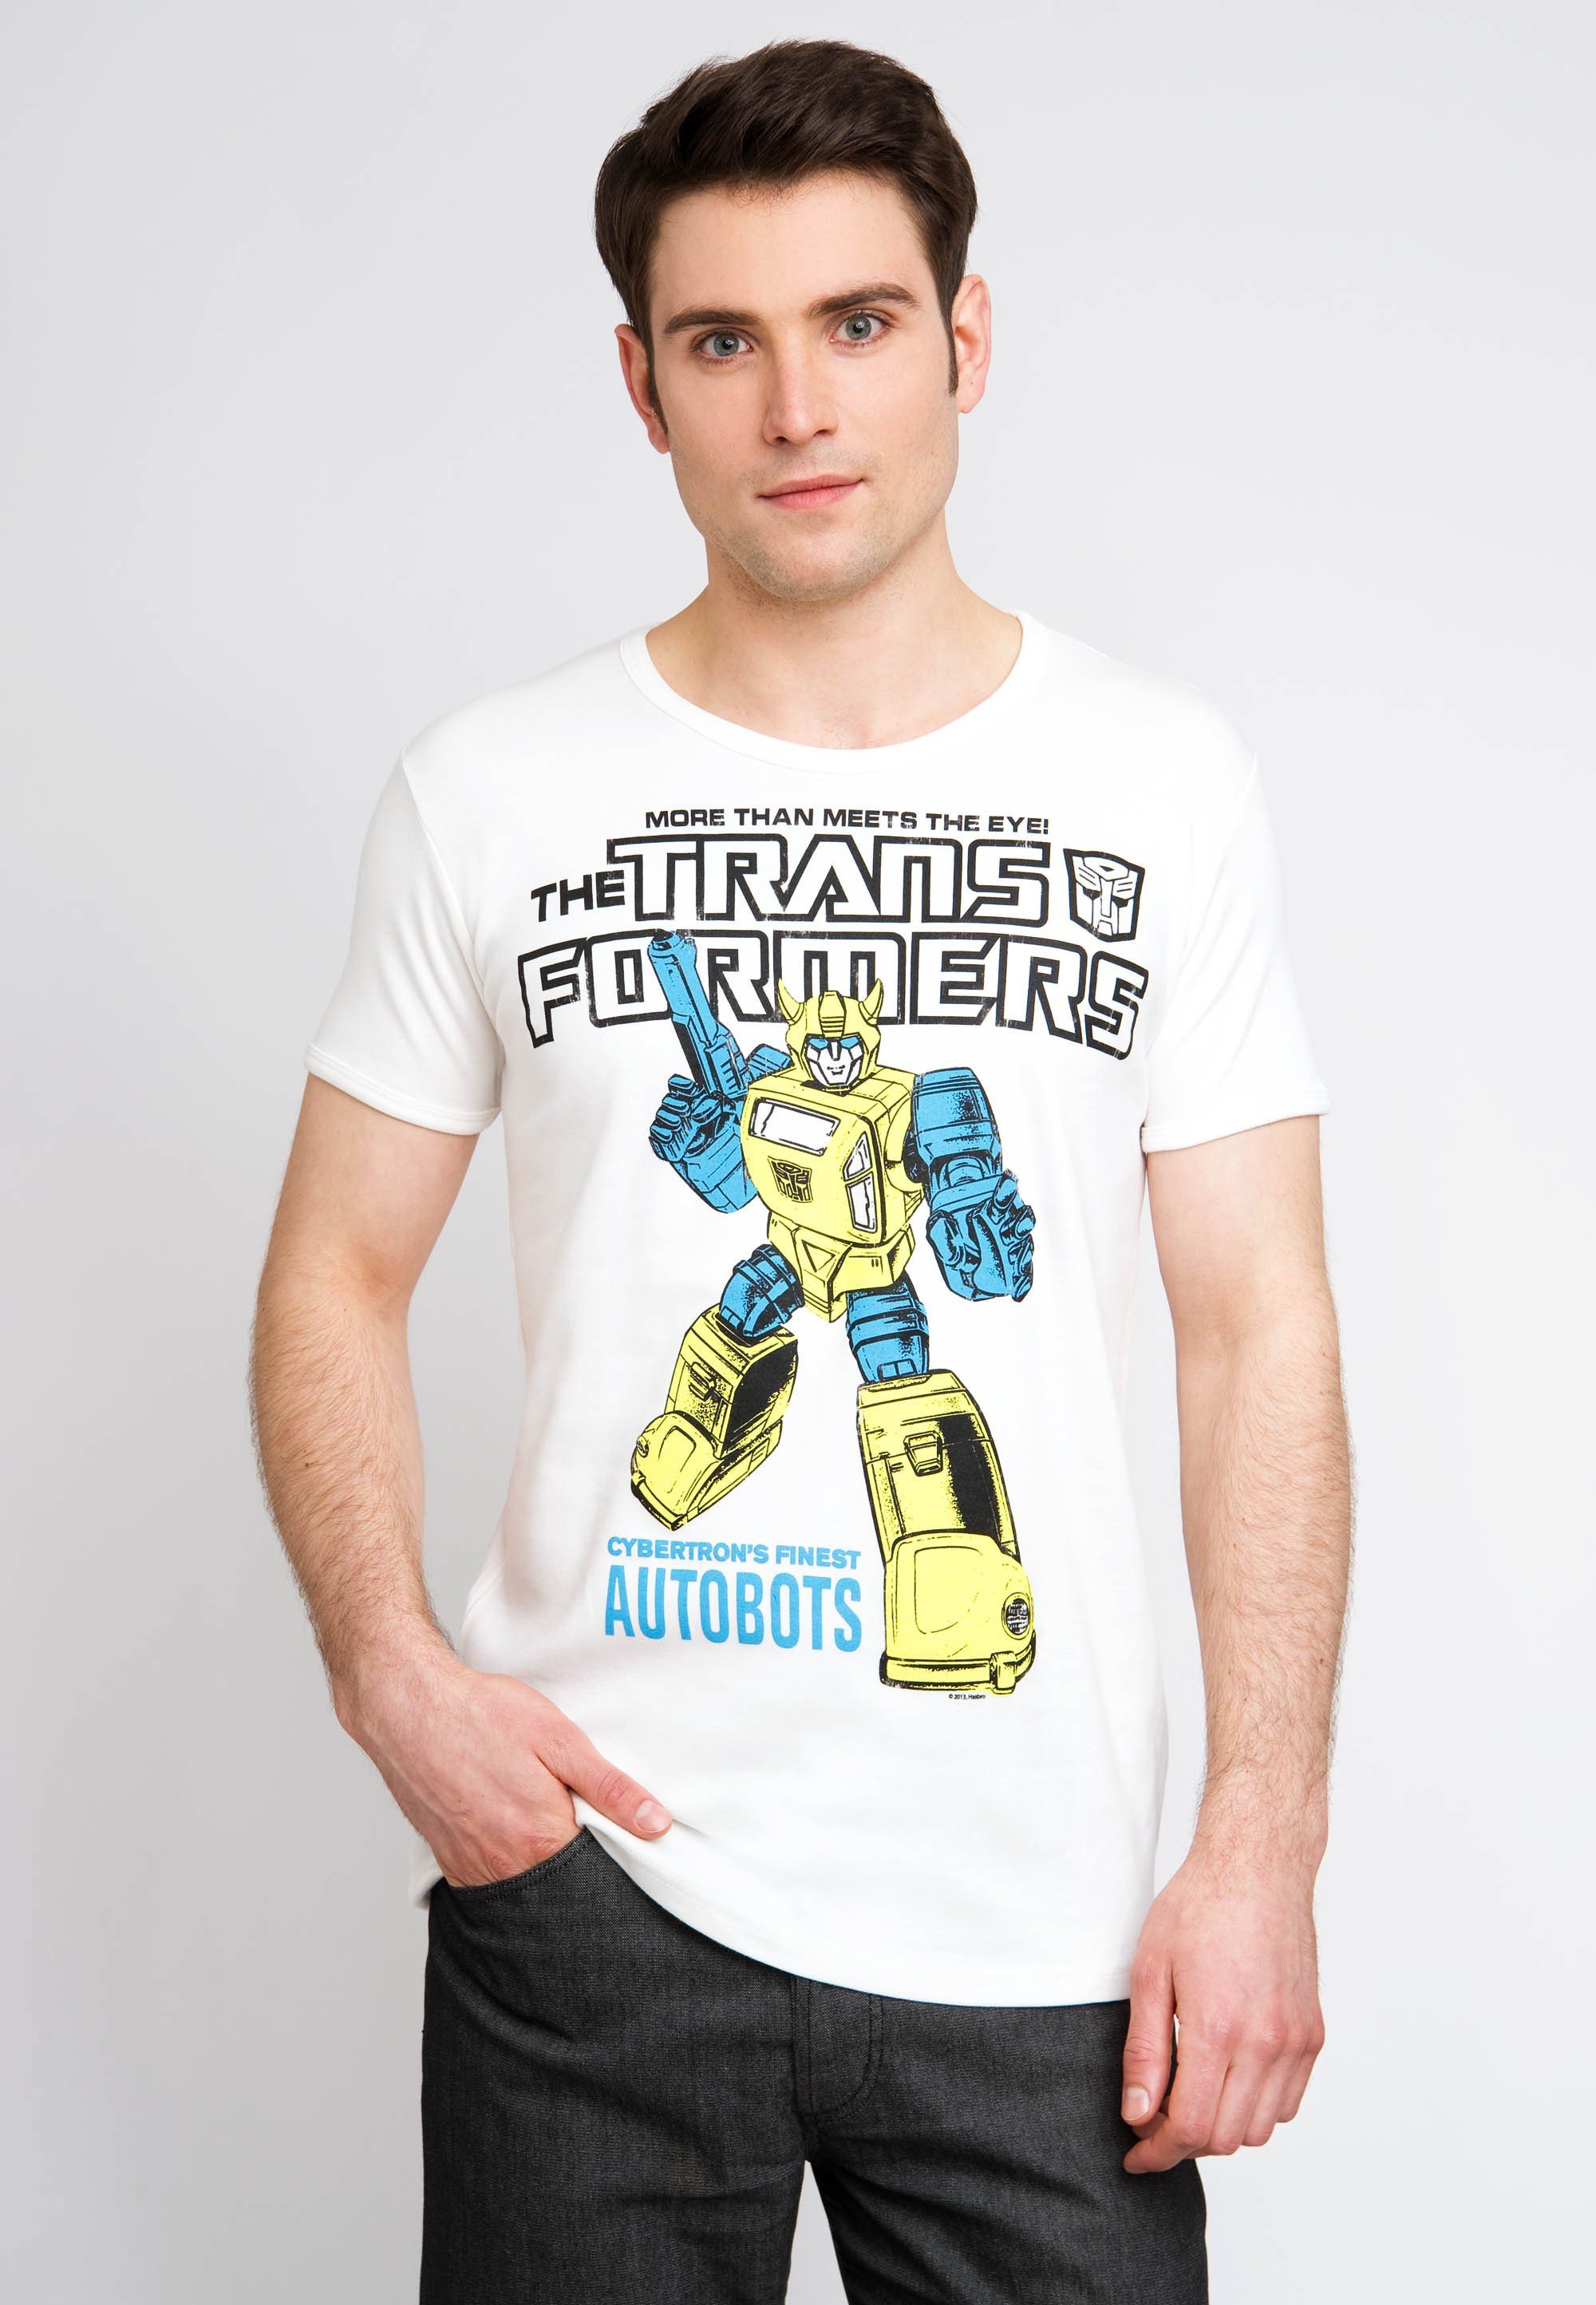 LOGOSHIRT T-Shirt Bumblebee Autobots mit großflächigem Frontprint